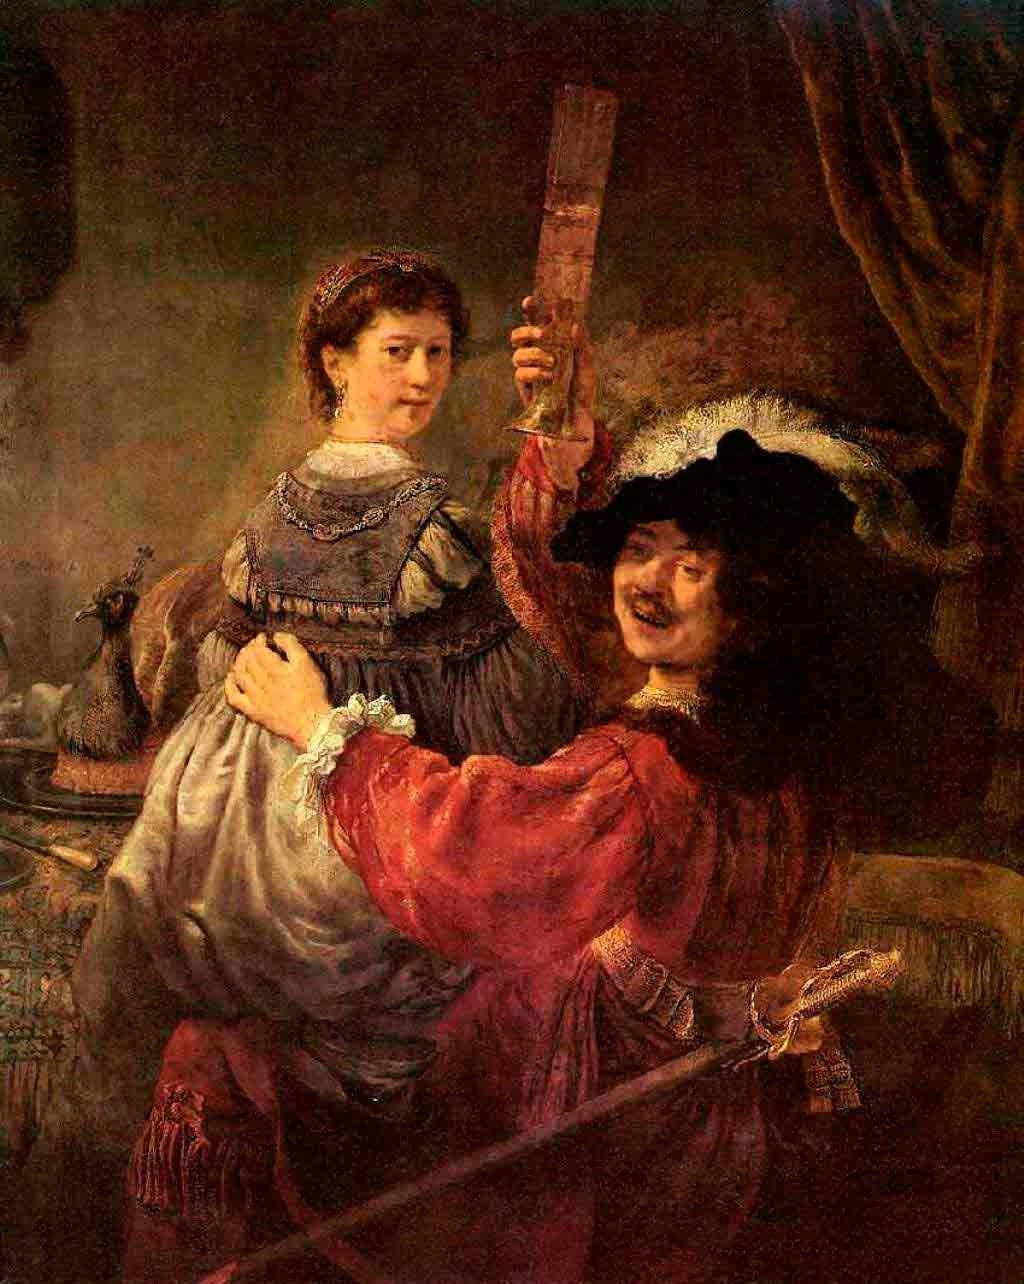 . За копию картины Рембрандта "Автопортрет с Саскией" получил звание профессора Дрезденской галереи. Фото: akmar.info